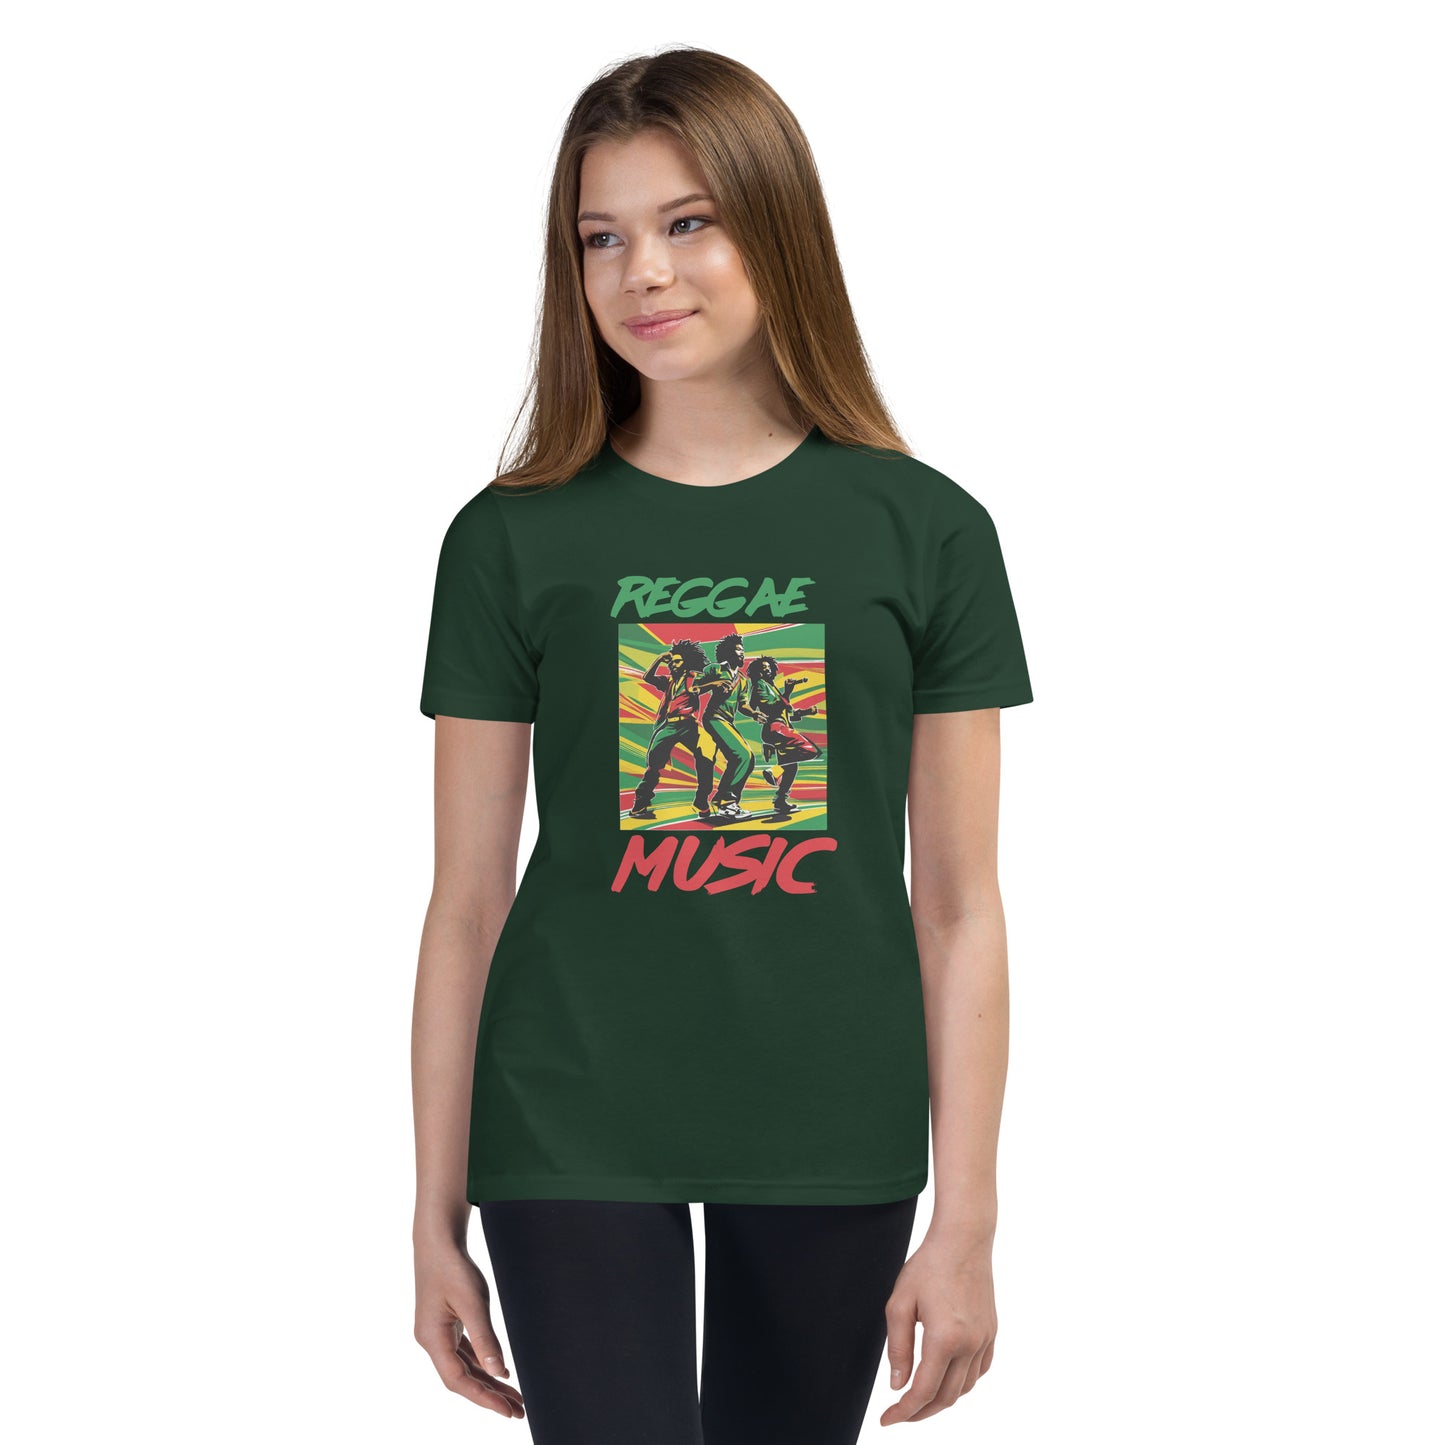 Youth Short Sleeve "Reggae Music" T-Shirt